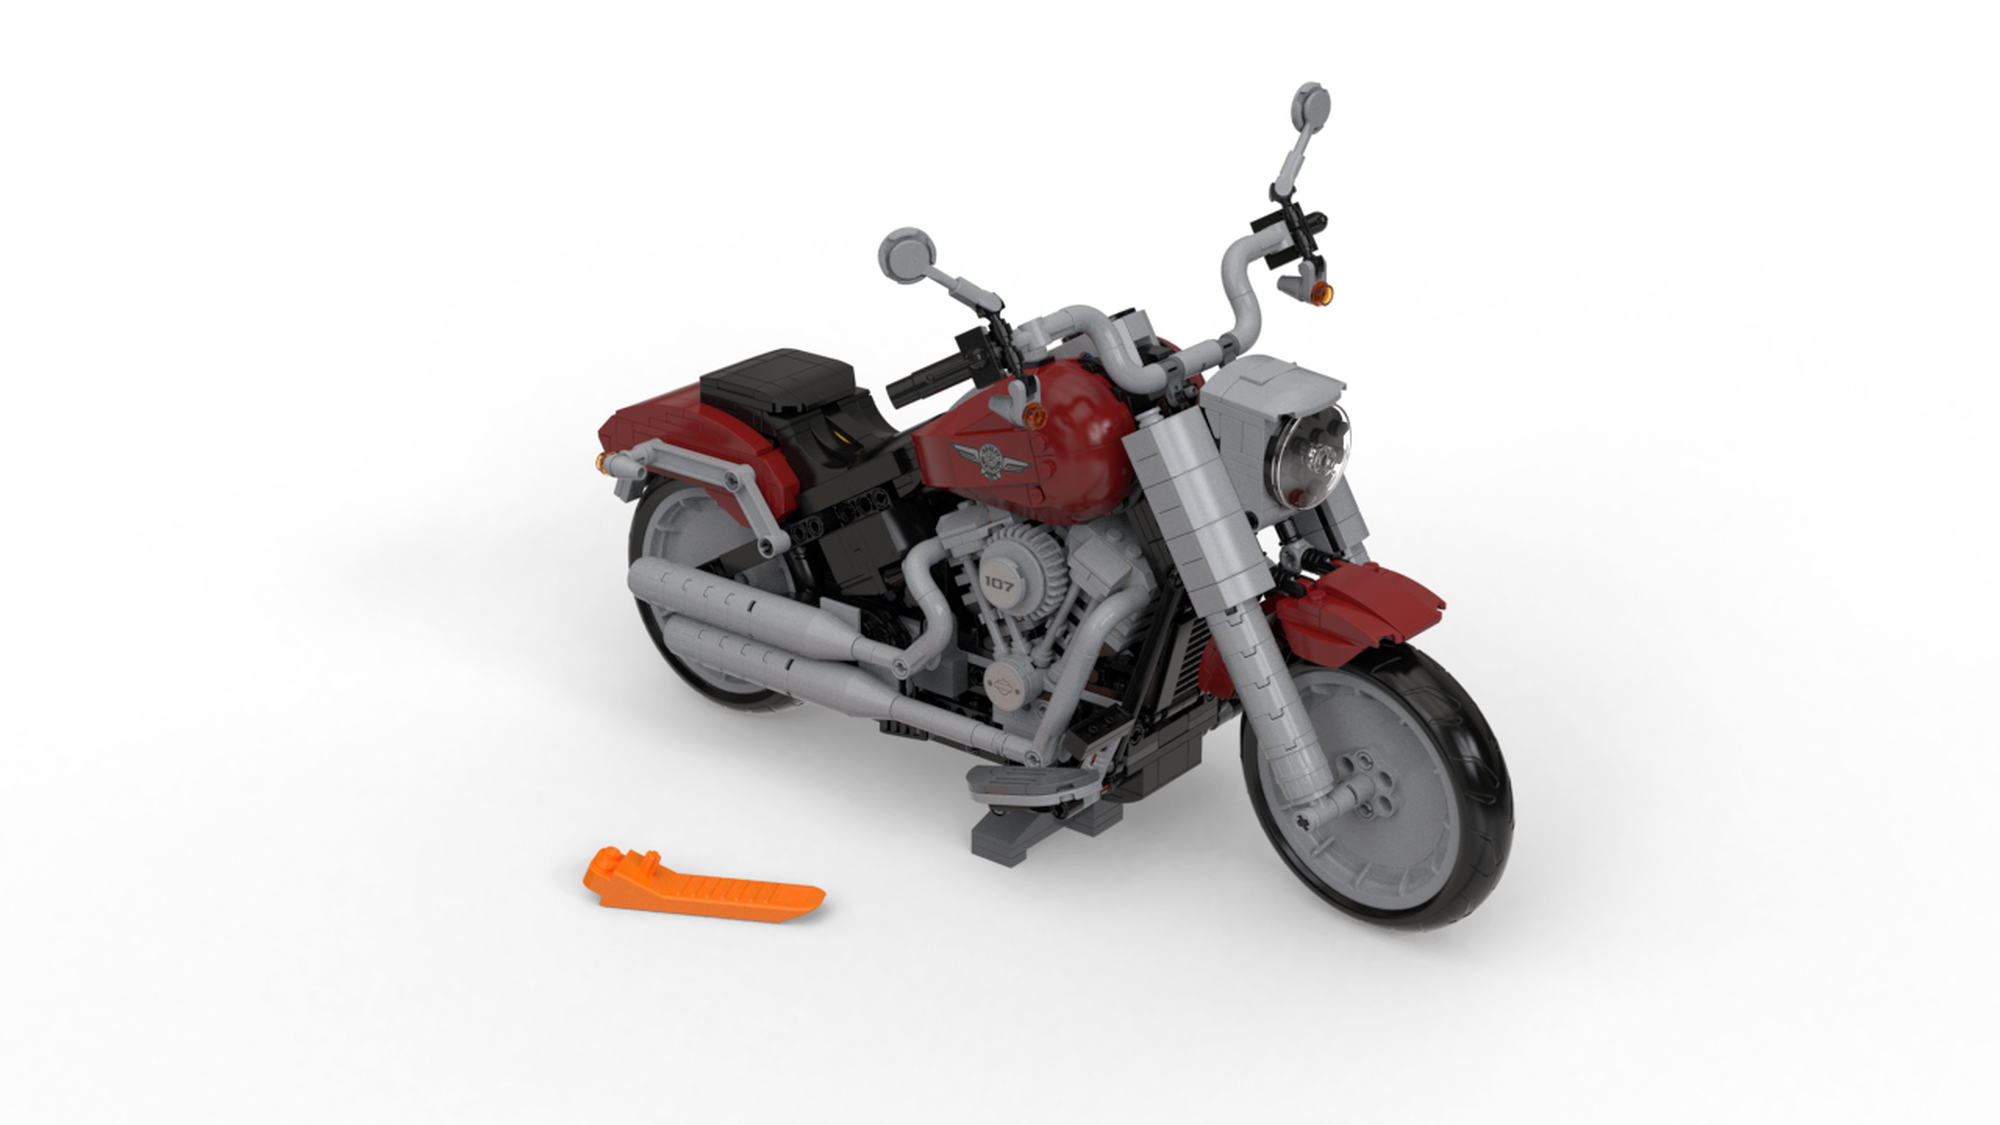 LEGO MOC 10269 Harley Davidson Fatboy RC Conversion by Cyrix